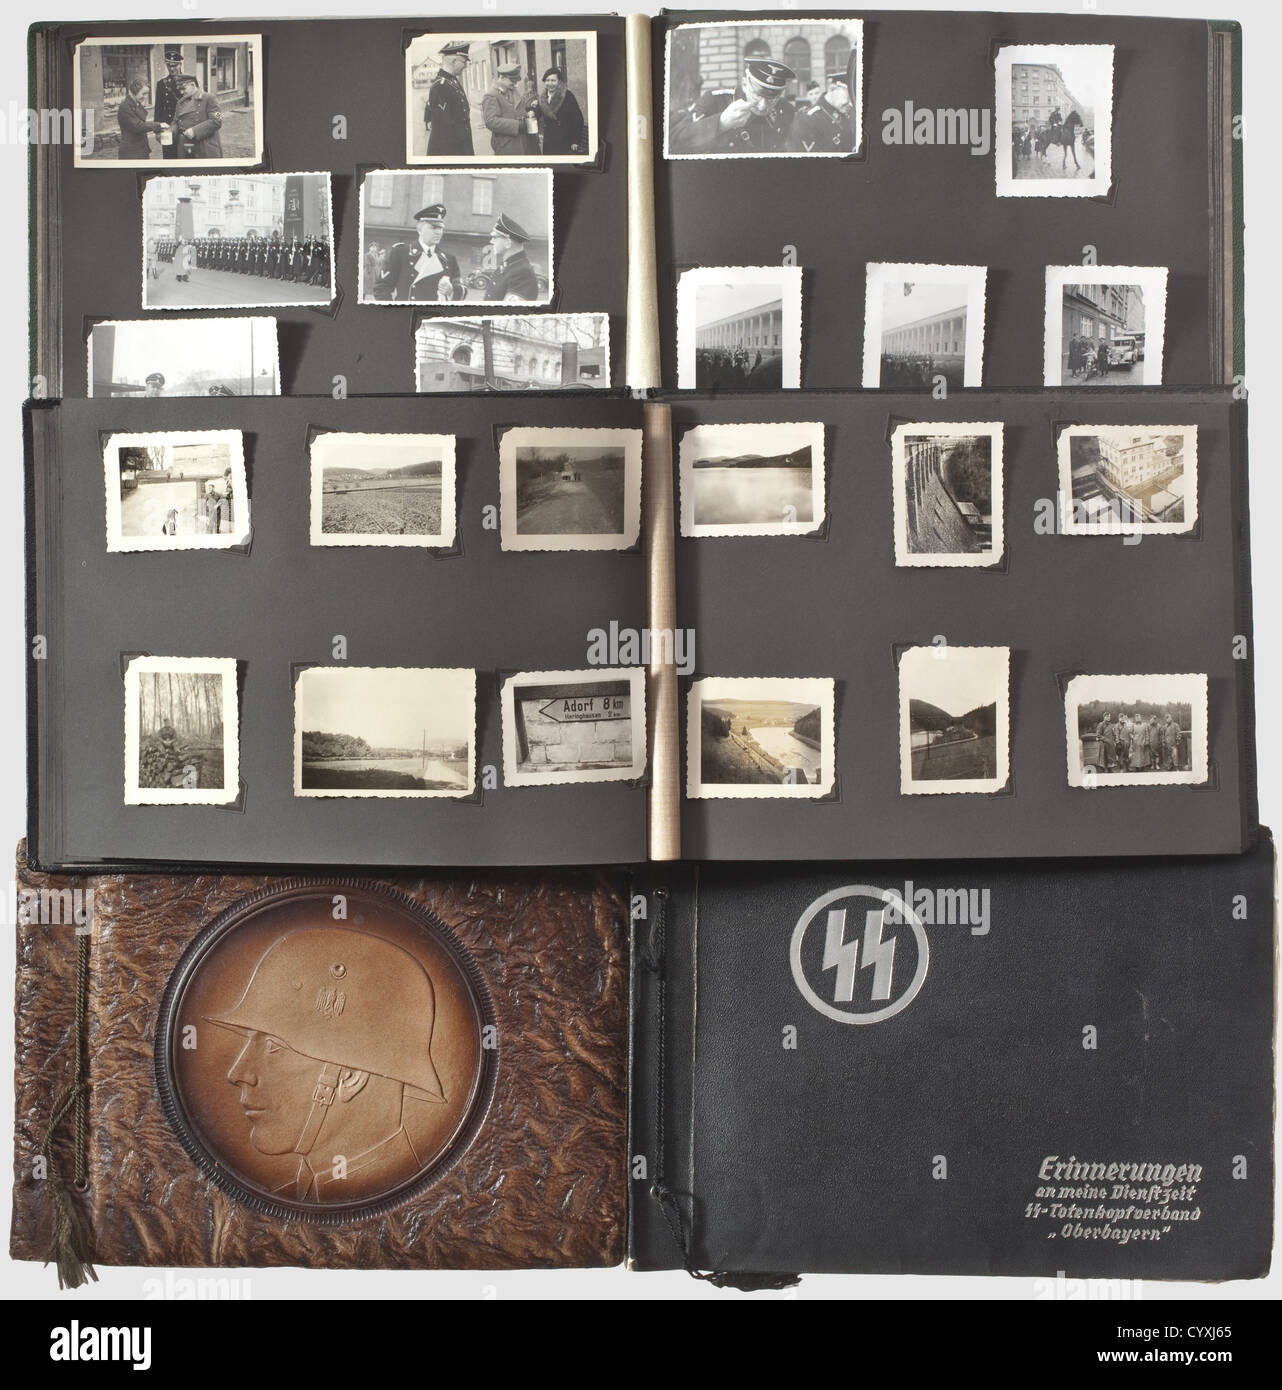 Quatre albums photo d'un membre de 'S-Heimwehr Danzig',SS-Totenkopfstandarte 1 'Oberbayern' et 'S-Heimwehr Danzig' quatre albums, dont des portions sont inscrites,avec ca.750 photos de formation et d'opérations dans la formation de tête de mort 'Oberbayern' et aussi SS Heimwehr 'Danzig',SS-Heimwehr,dans le temps remarquable,en images de la jeunesse 'Oberbayern',en temps d'Oberbayunder',SS-Heimbayunder 'Heimbayar 'SS Heimwehr Danzig'.Portraits,bunkers,chars et plus encore surtout des photos militaires.les images de guerre commencent avec la conquête de l'Westerplatte à Danzig, suivi de P,Additional-Rights-Clearences-Not Available Banque D'Images